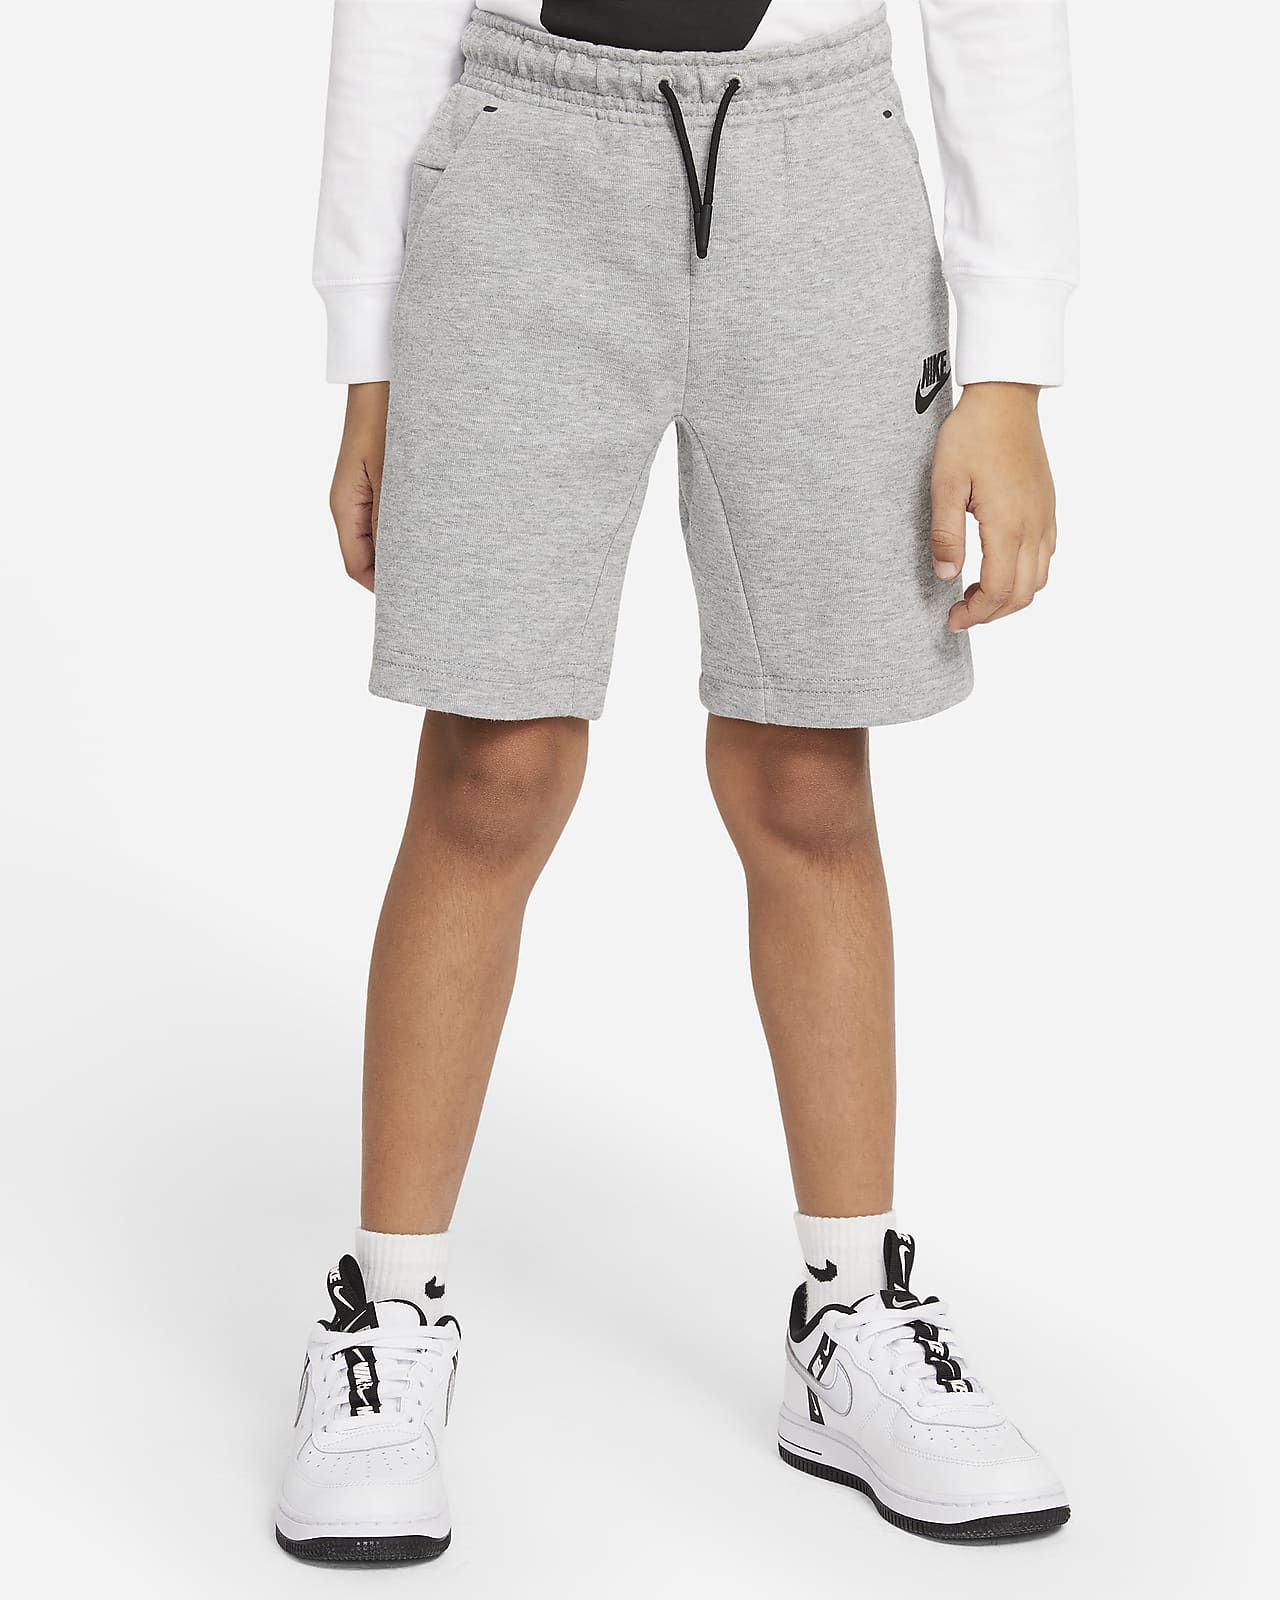 Nike Sportswear Tech Fleece Little Kids' Shorts. Nike.com | Nike (US)